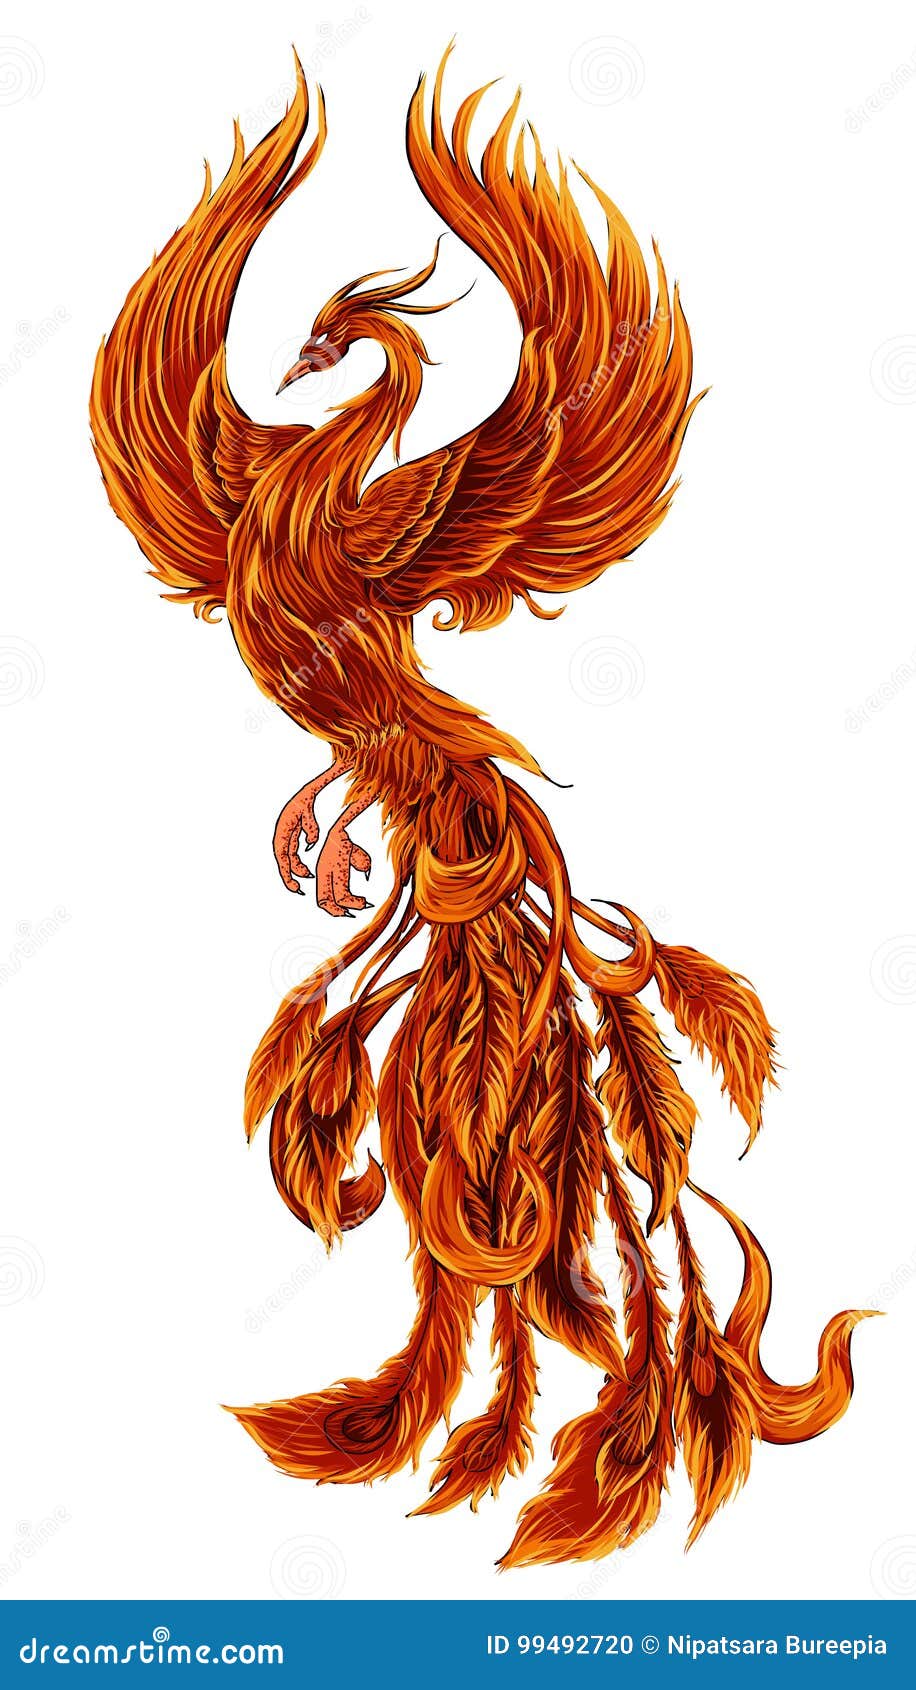 Image result for flaming phoenix tattoo  Thiết kế hình xăm Hình xăm cánh  tay Hình xăm ngầu